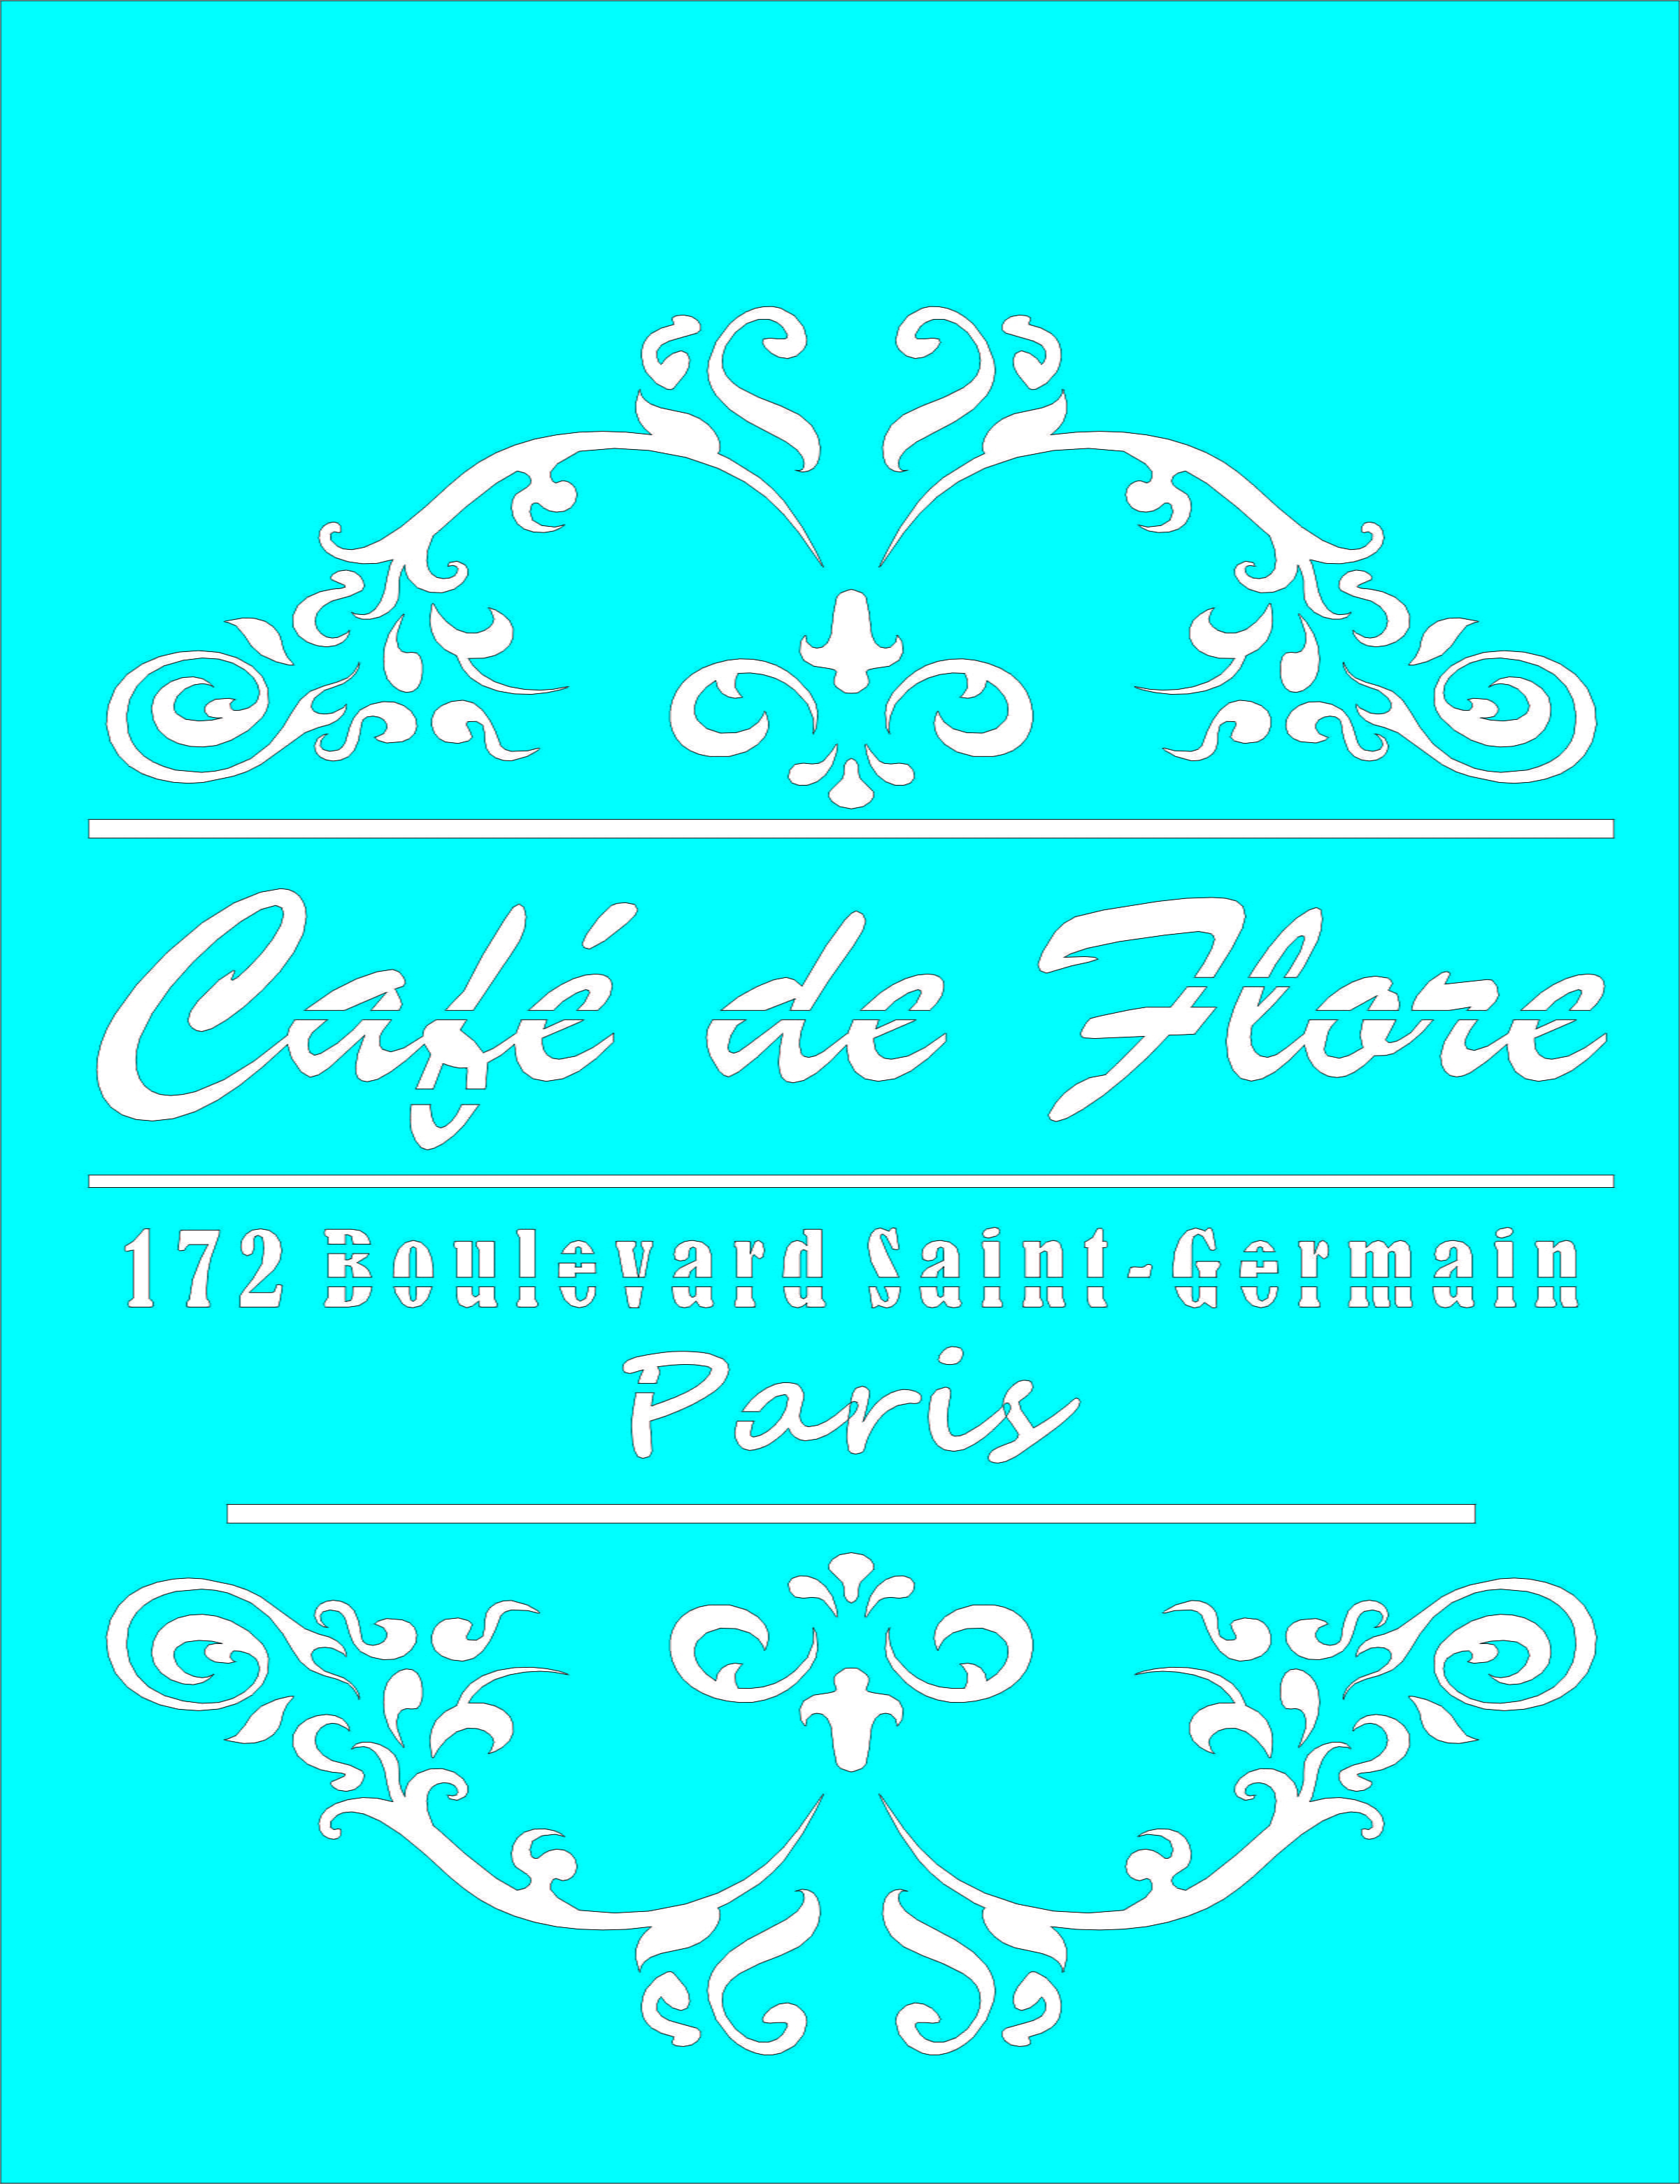 STENCIL JOIA CAFE DE FLORE  20*26 CM JN 1599